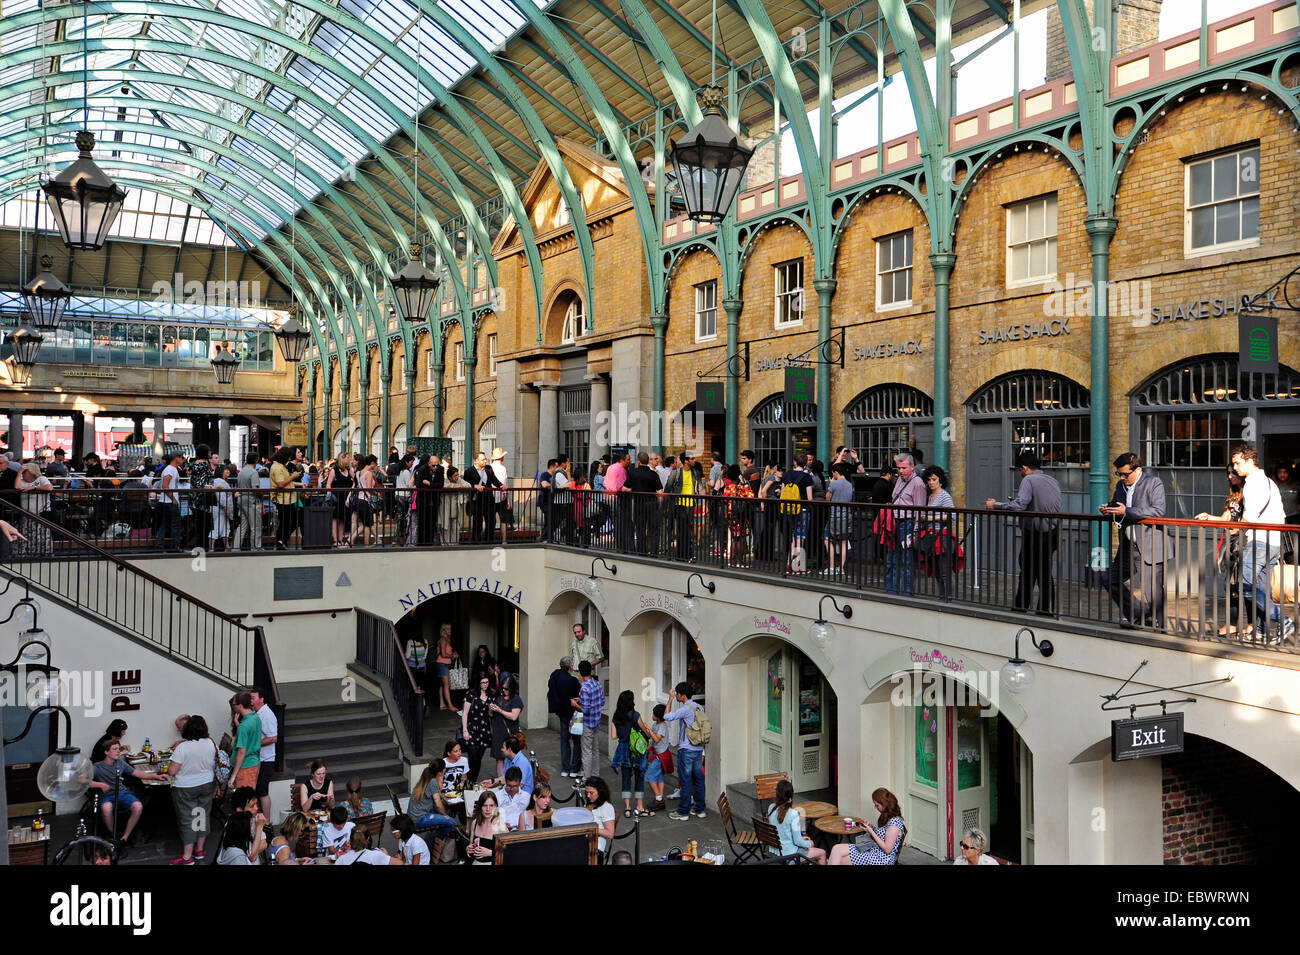 Menschen in Covent Garden Zentralmarkt, Covent Garden, West End, London, England, Großbritannien, Vereinigtes www.Linz.de Stockfoto